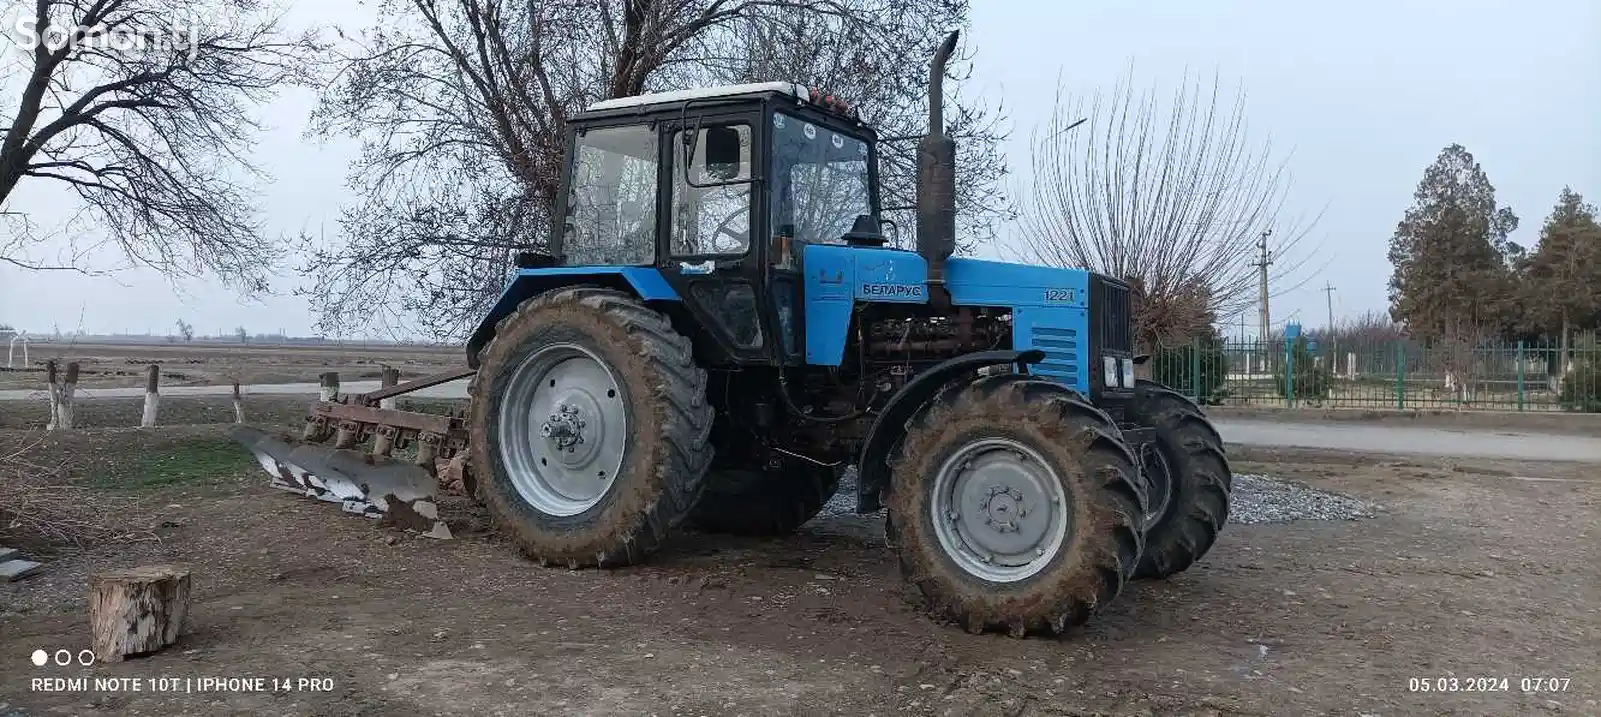 Трактор МТЗ Беларусь 1221-13